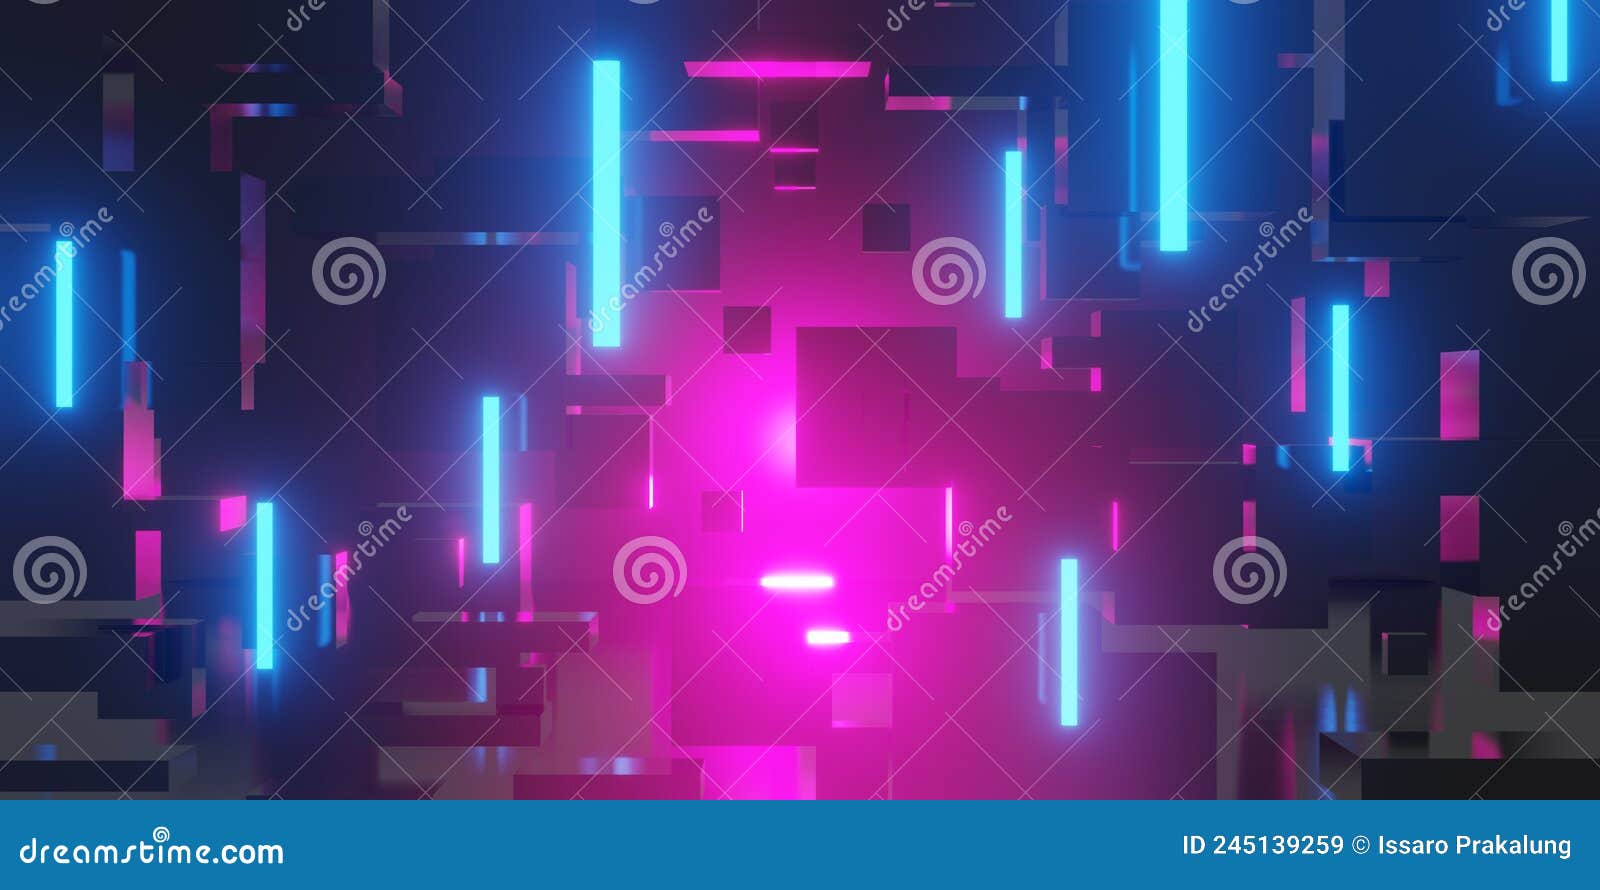 Nếu bạn thích những hình nền chơi game trừu tượng và đặc biệt là phong cách Cyberpunk, hãy để chúng tôi giúp bạn khám phá những bức tranh đẹp nhất cho máy tính của bạn. Với sự kết hợp linh hoạt giữa các màu sắc và các đường nét trừu tượng, bạn cảm thấy như mình chìm đắm trong thế giới ảo khi sử dụng máy tính của mình.